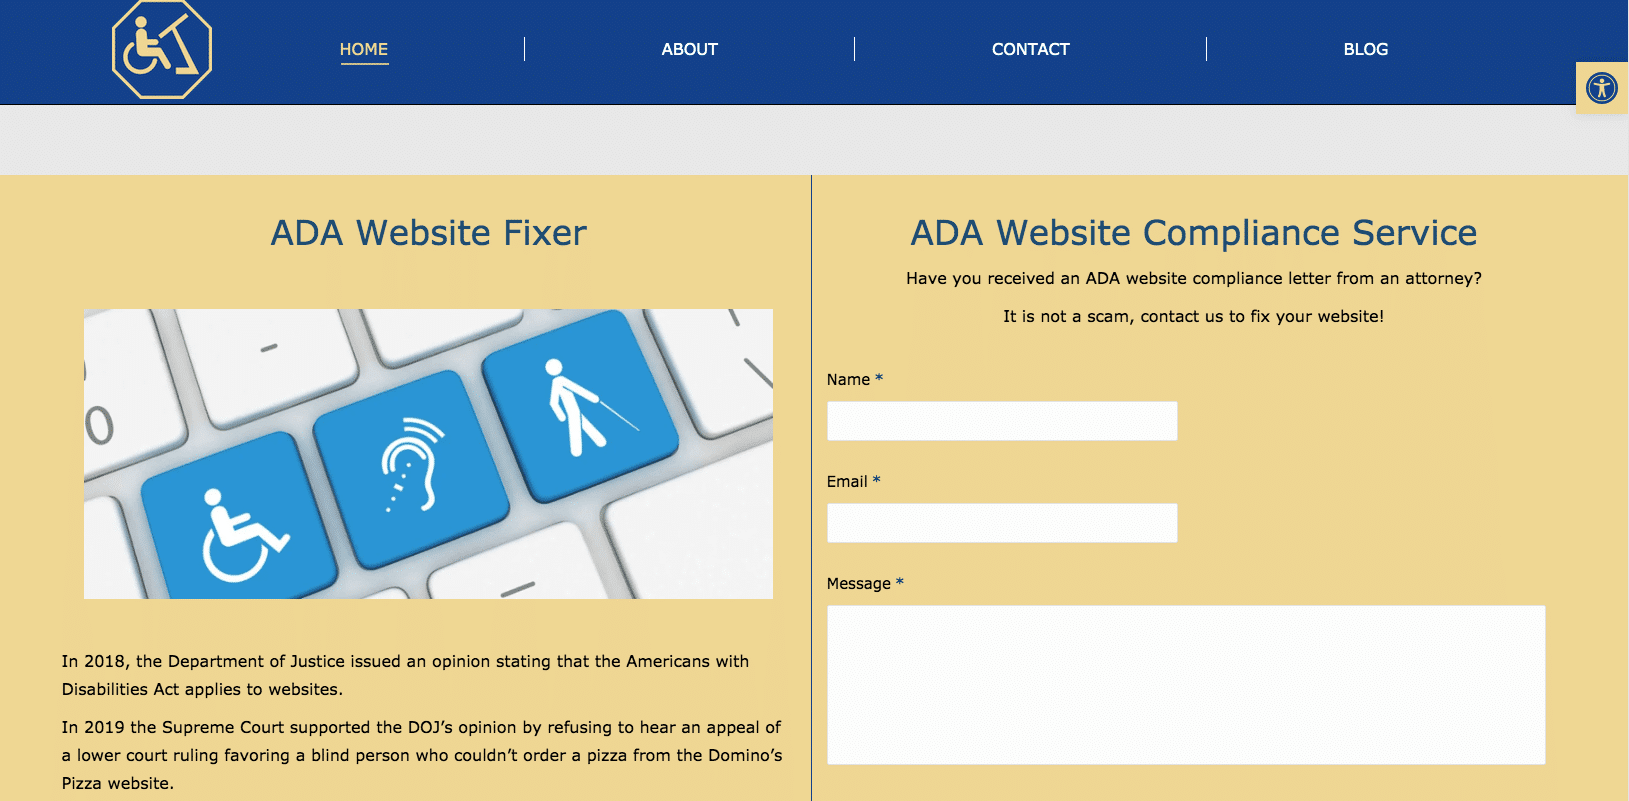 ADA Website Compliance, ADA Website Fixer